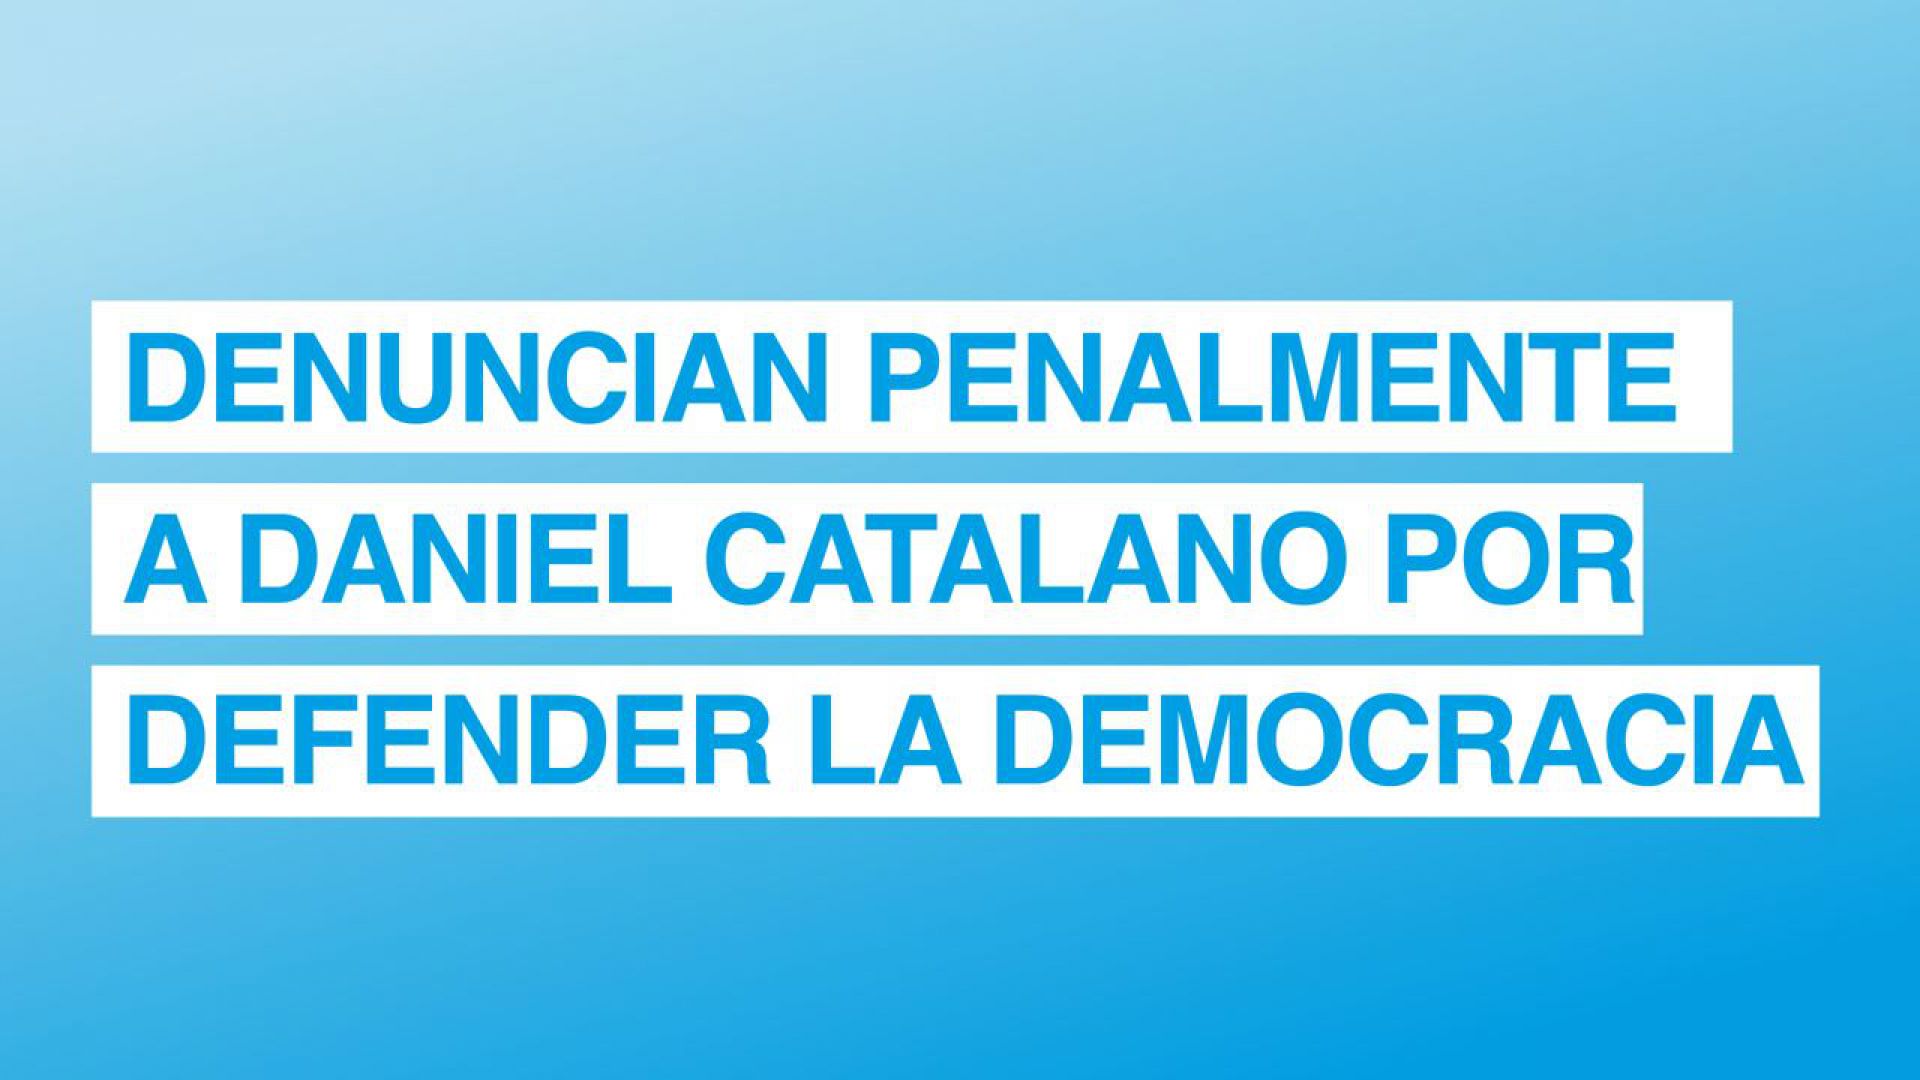 Denuncial penalmente a Daniel Catalano por defender la democracia